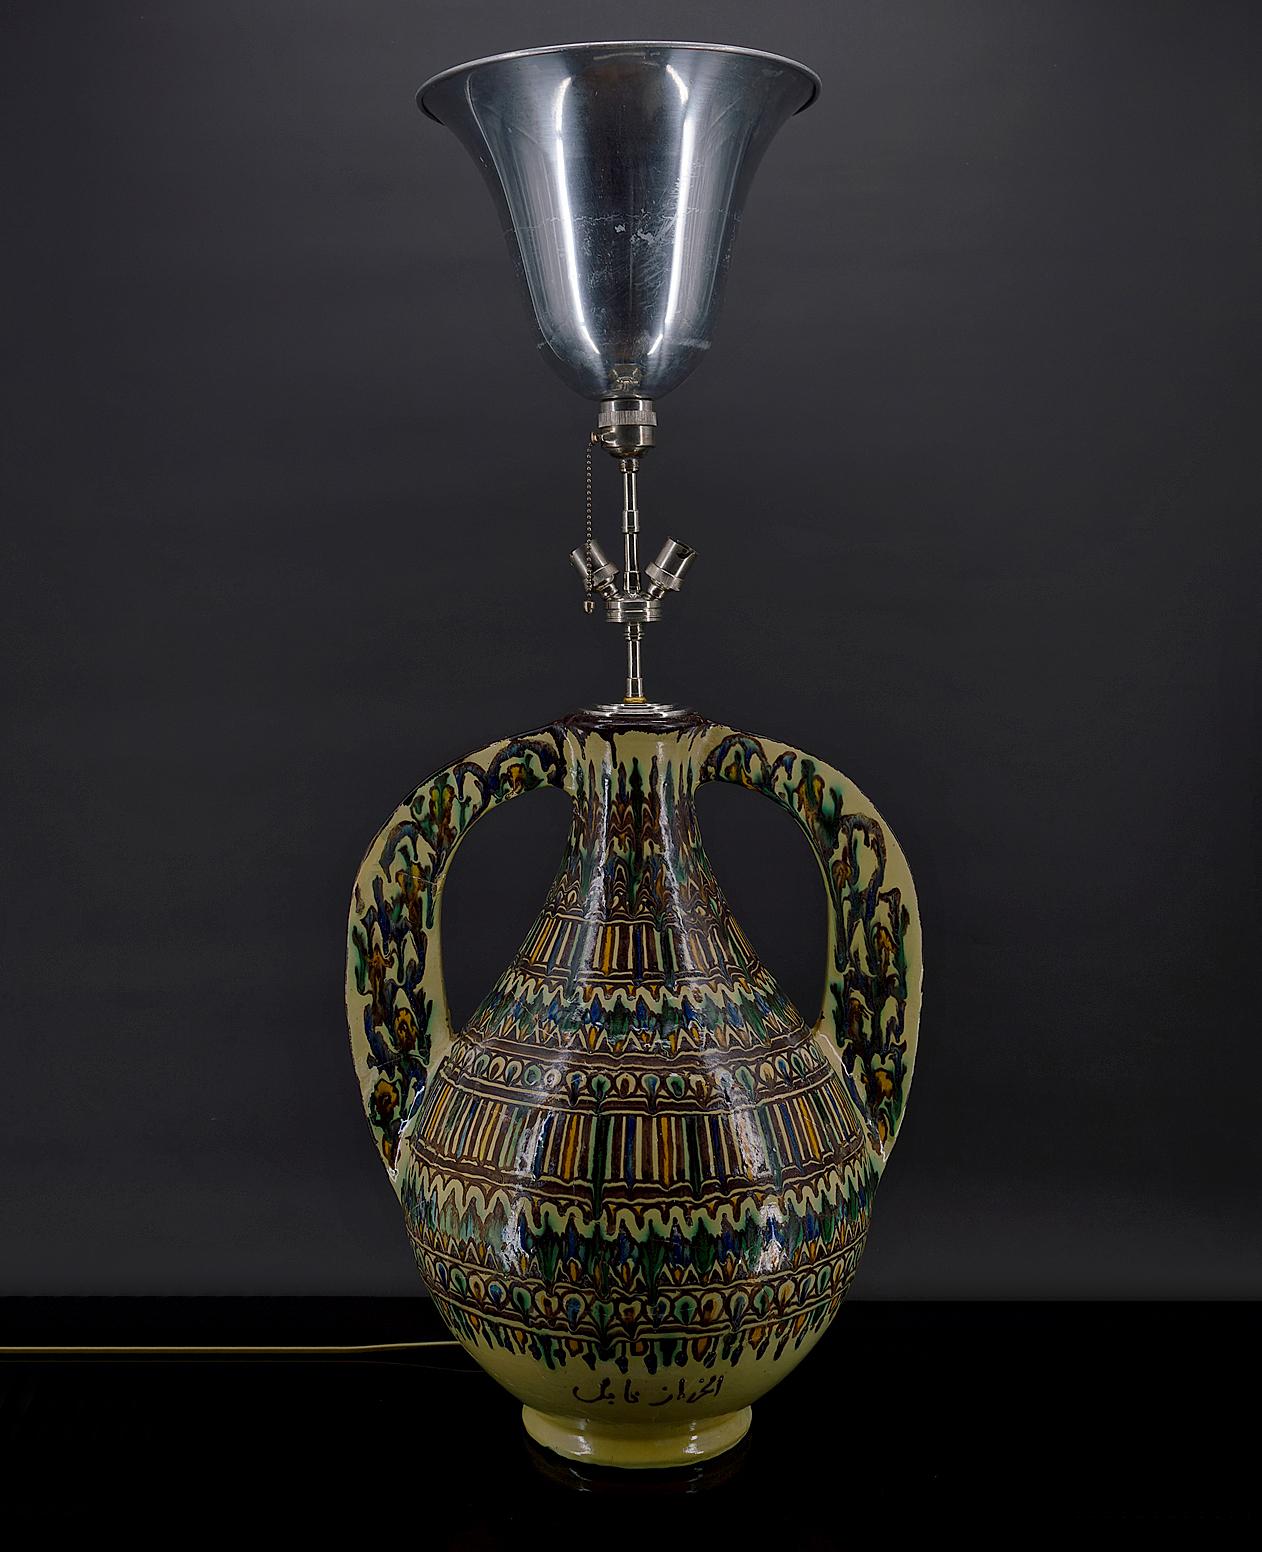 Wichtige Keramikvase als Lampe montiert.
Nabeul, Tunesien, Anfang des 20. Jahrhunderts.
Unterschrieben.
Von El-Kharraz

Die Familie Kharraz stammt ursprünglich aus Andalusien und ließ sich im 17. Jahrhundert in Tunesien nieder. Töpfer vom Vater auf